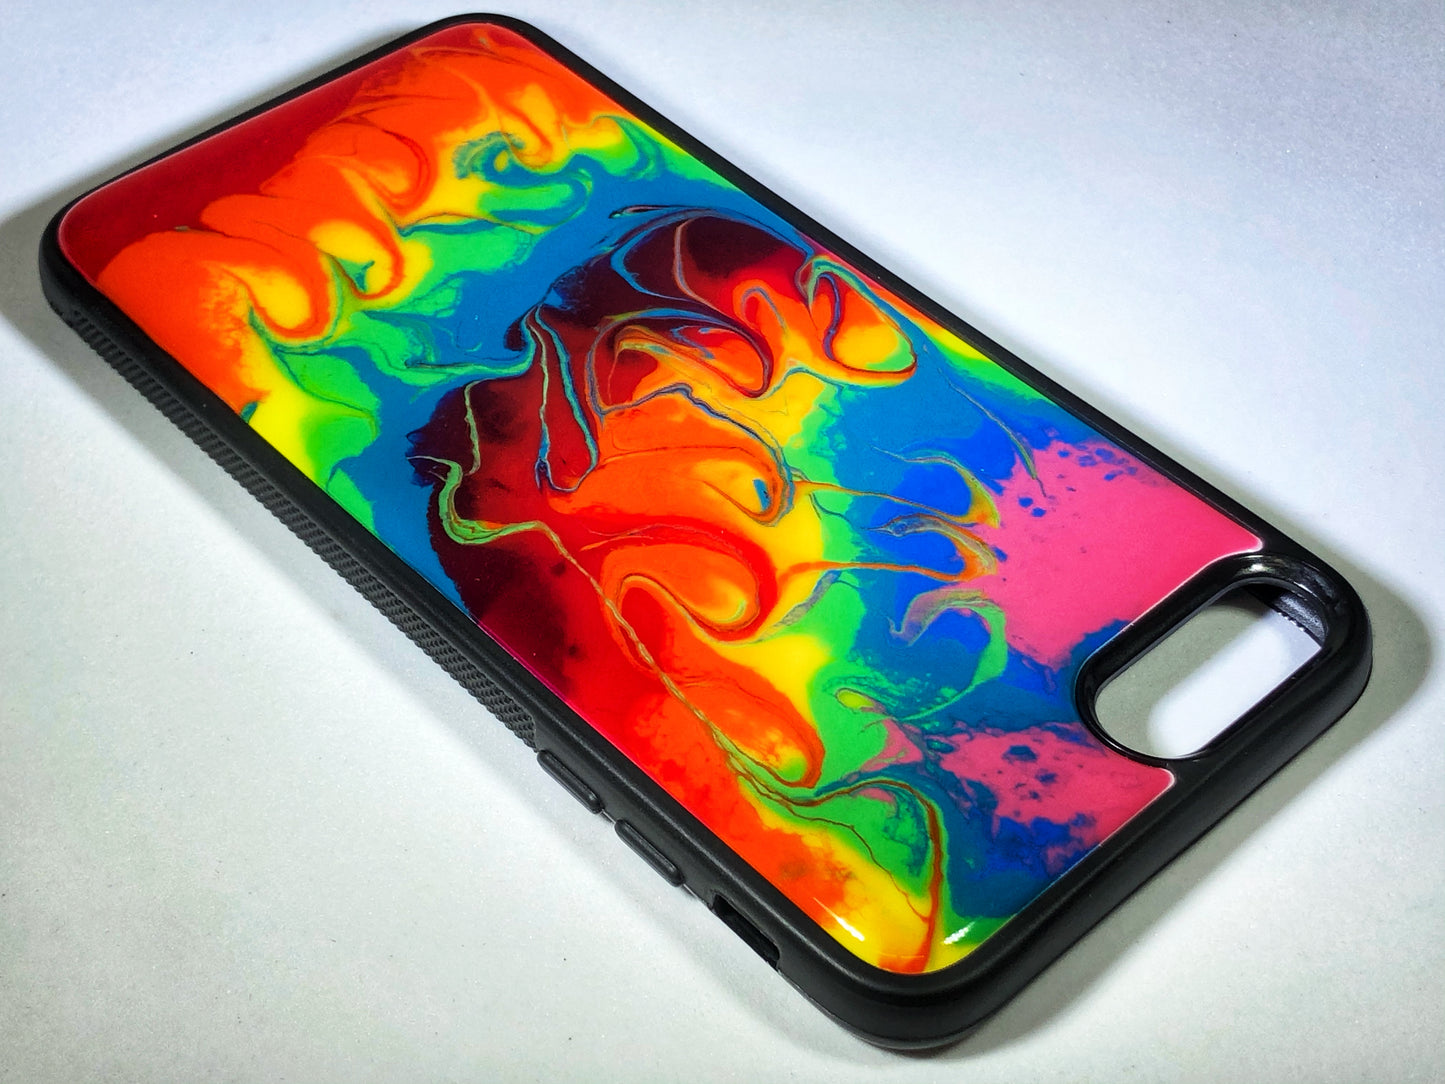 iPhone 7/8 Plus Phone Case - "Tie Dye" Resin